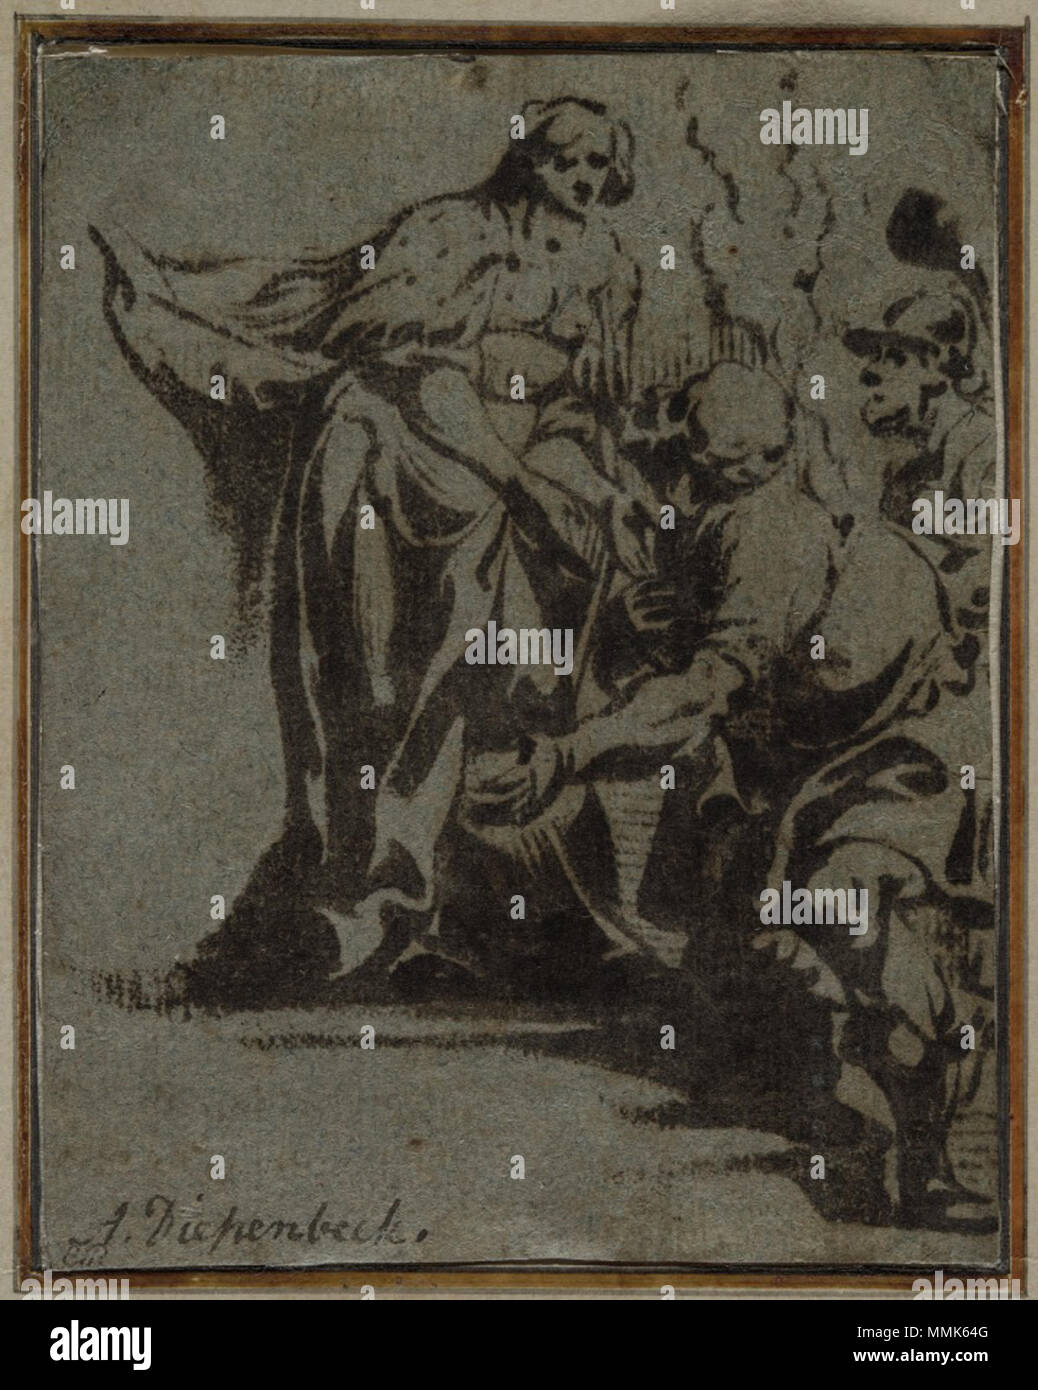 Une scène de la mythologie classique, circa 1620.-50. Antoon Sallaert Abraham van Diepenbeeck, (après) - une scène de la mythologie classique Banque D'Images